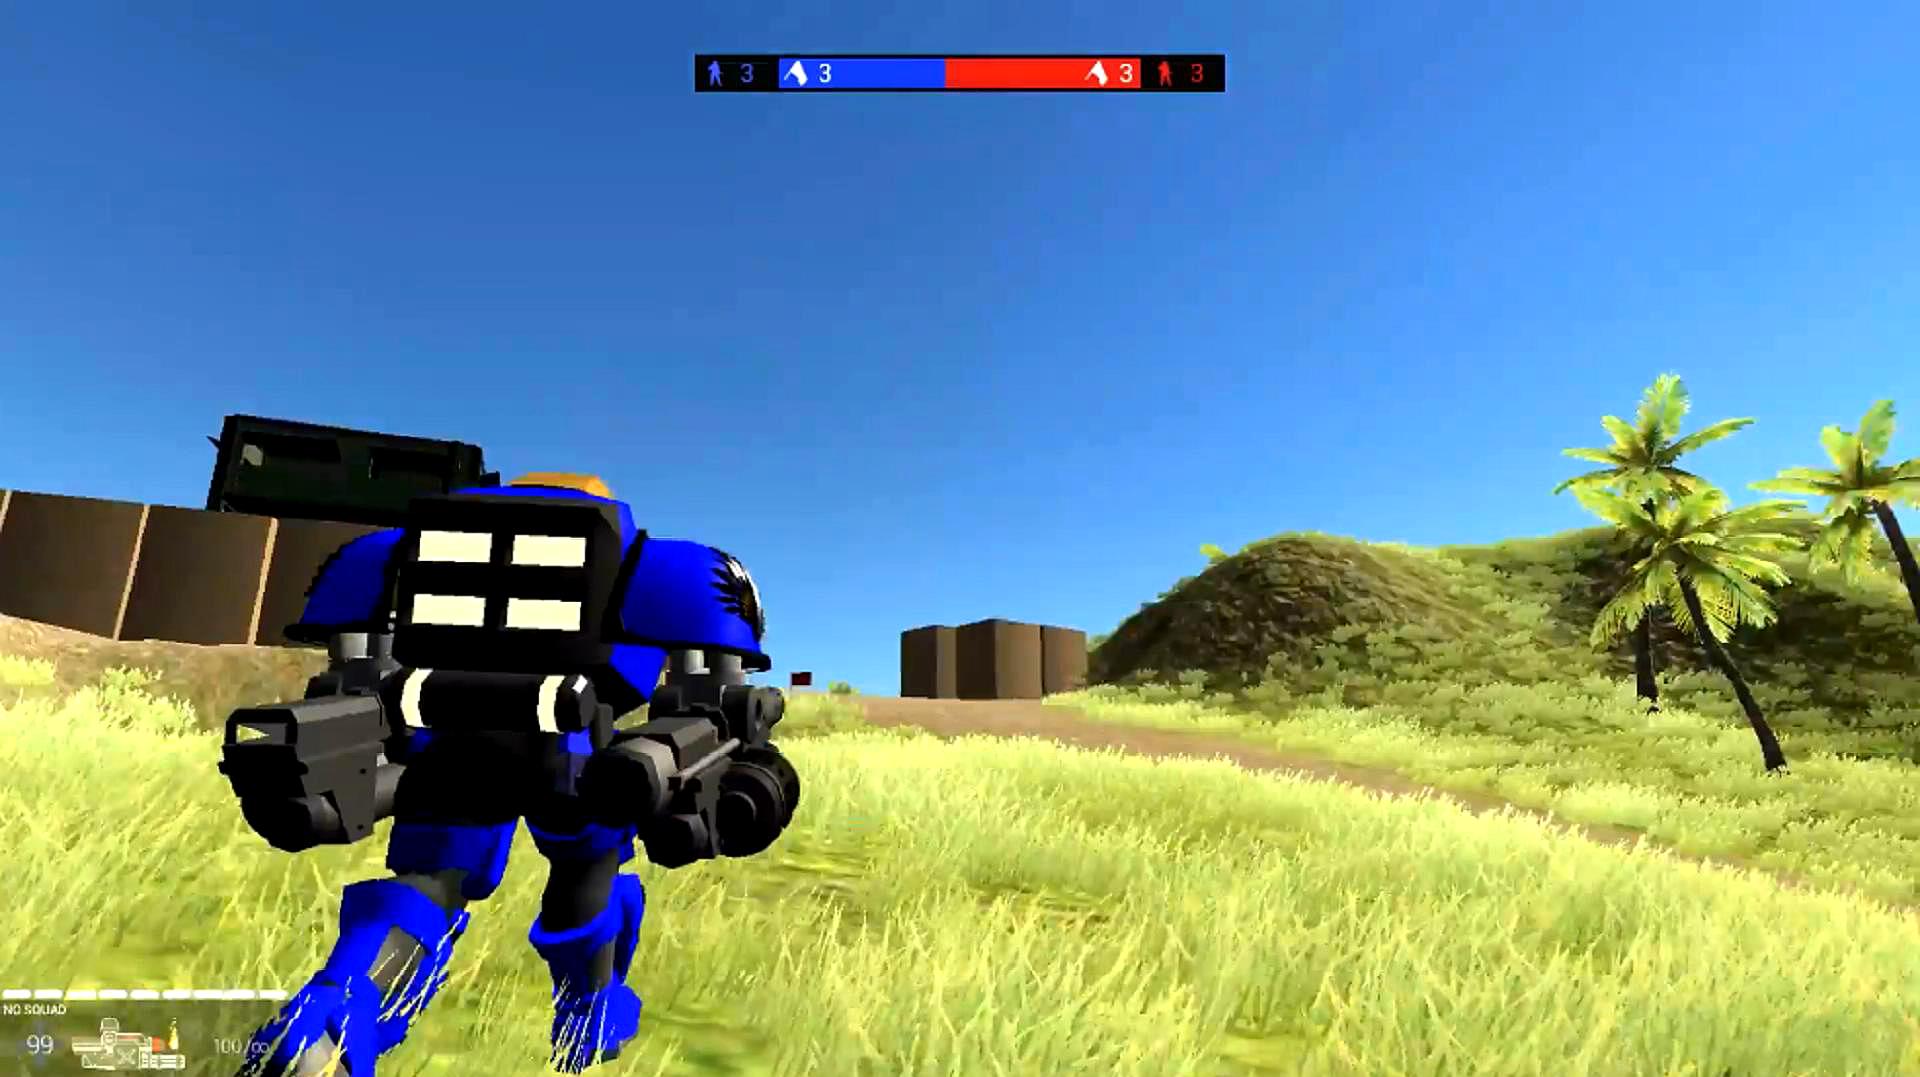 战地模拟器:驾驶机器人机甲,逐个摧毁敌人大本营!